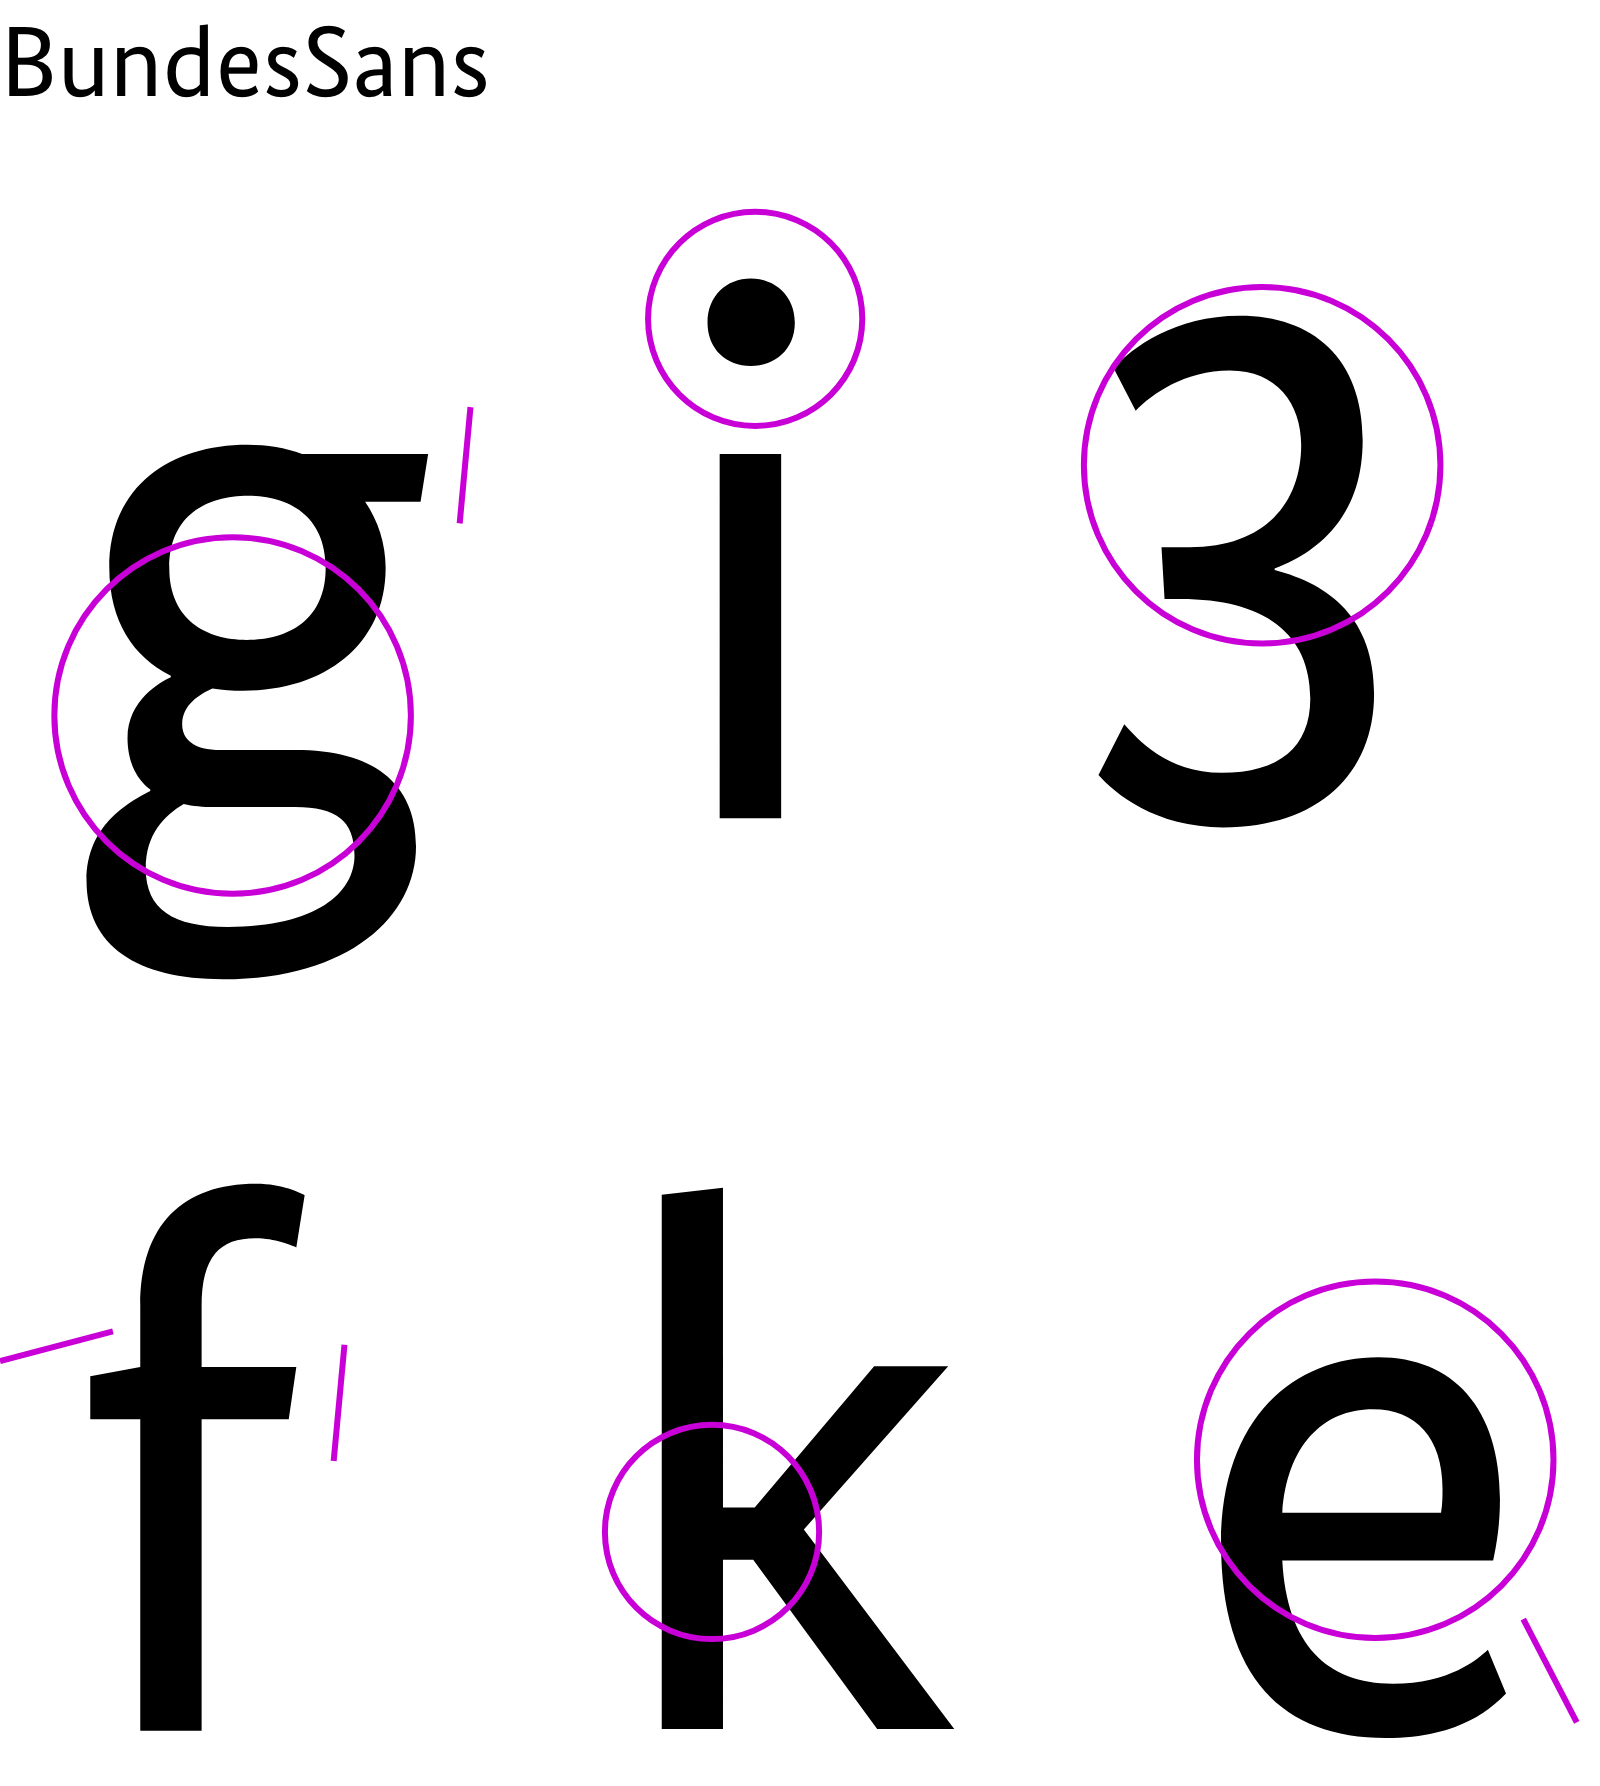 Beispielhafte Buchstaben der Schrift BundesSans: g, i, 3, f,k, e mit Markierung der Bereiche, die sich von den Buchstaben der Arial unterscheiden